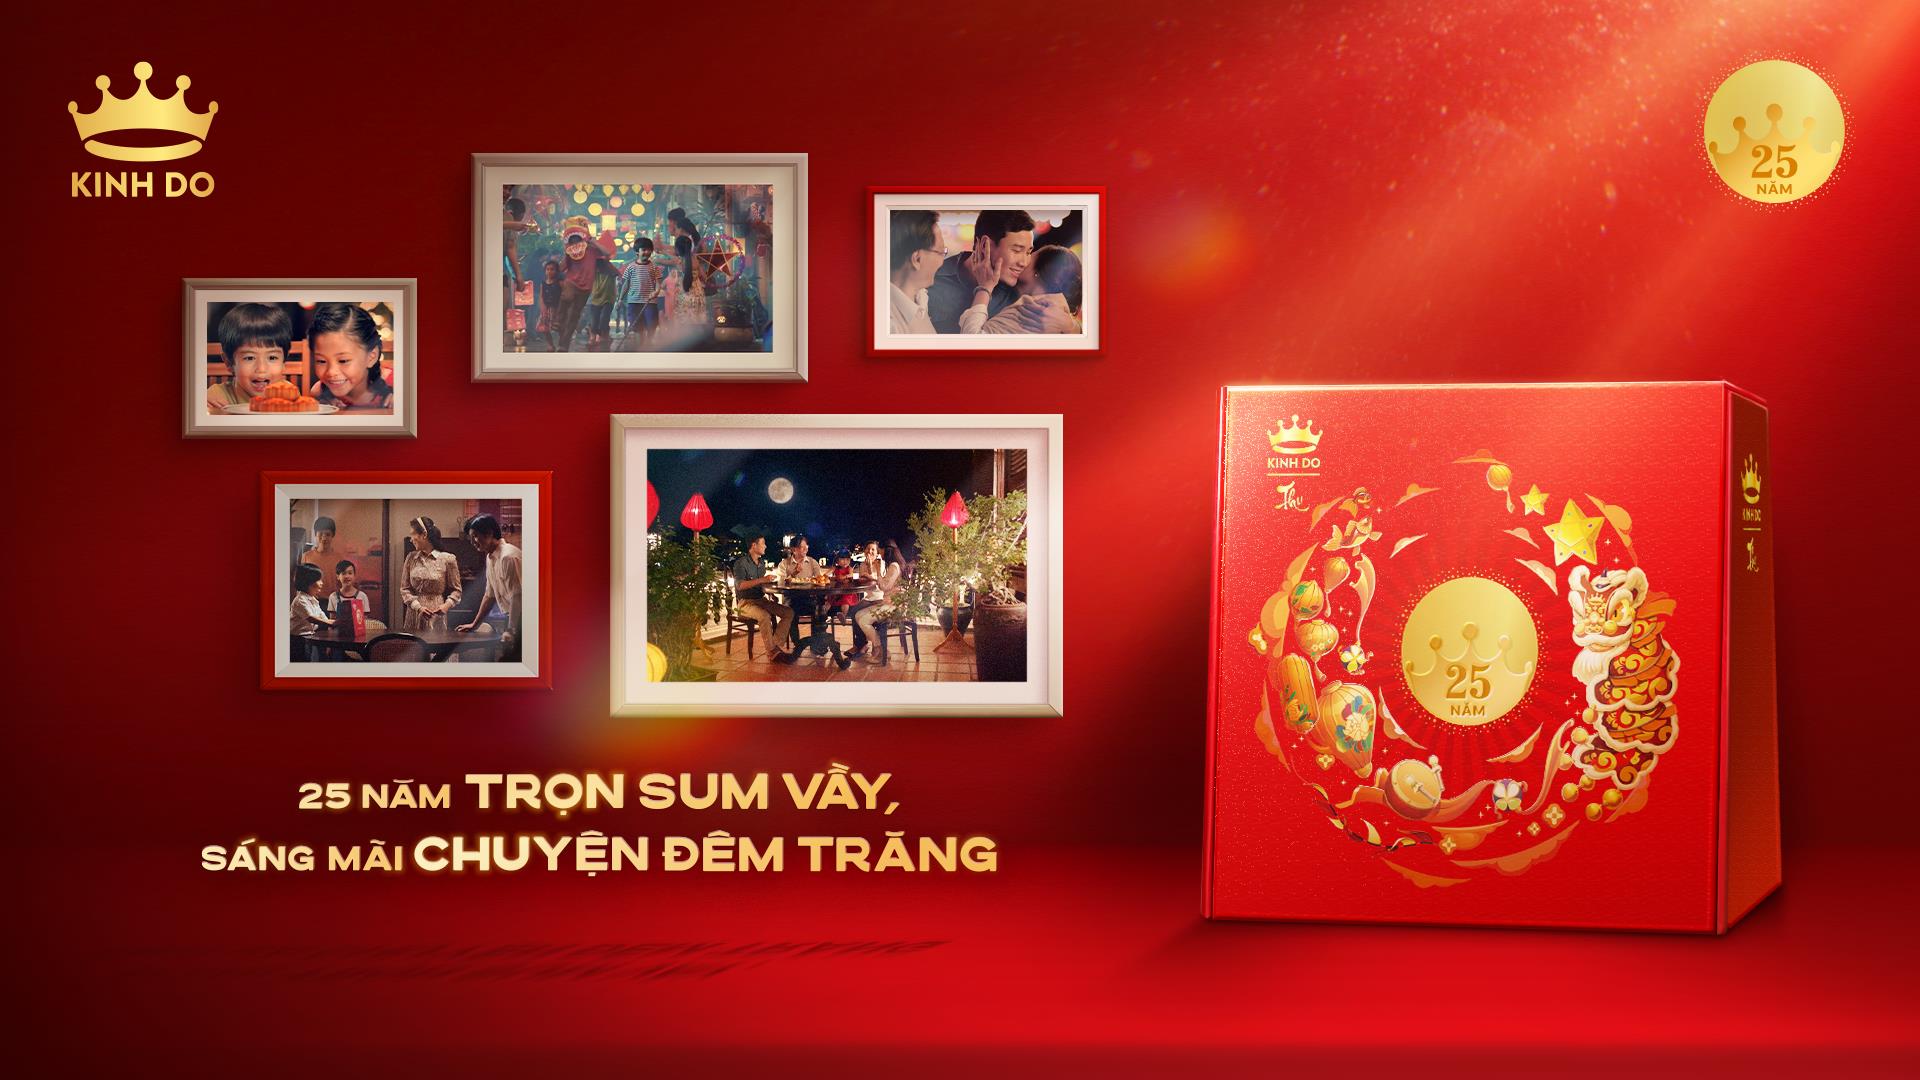 Mondelez Kinh Đô và một mùa trăng sum vầy ý nghĩa dành tặng hàng triệu người Việt - Ảnh 7.